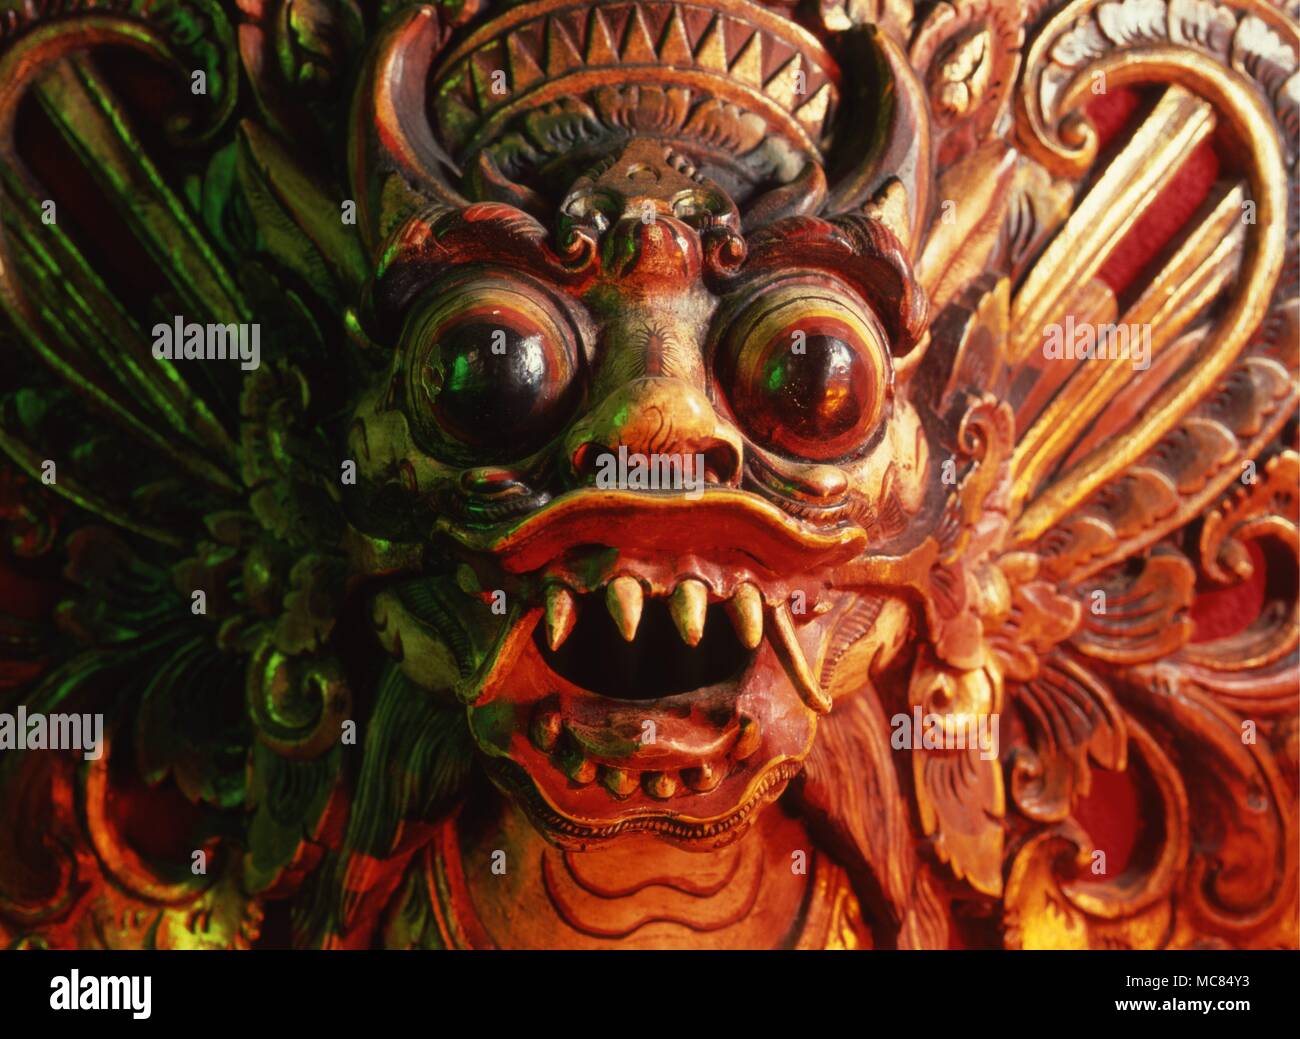 Demonio balinesa, llamada por los lugareños "Bomba", y visto por ellos como un guardián contra el mal. Foto de stock